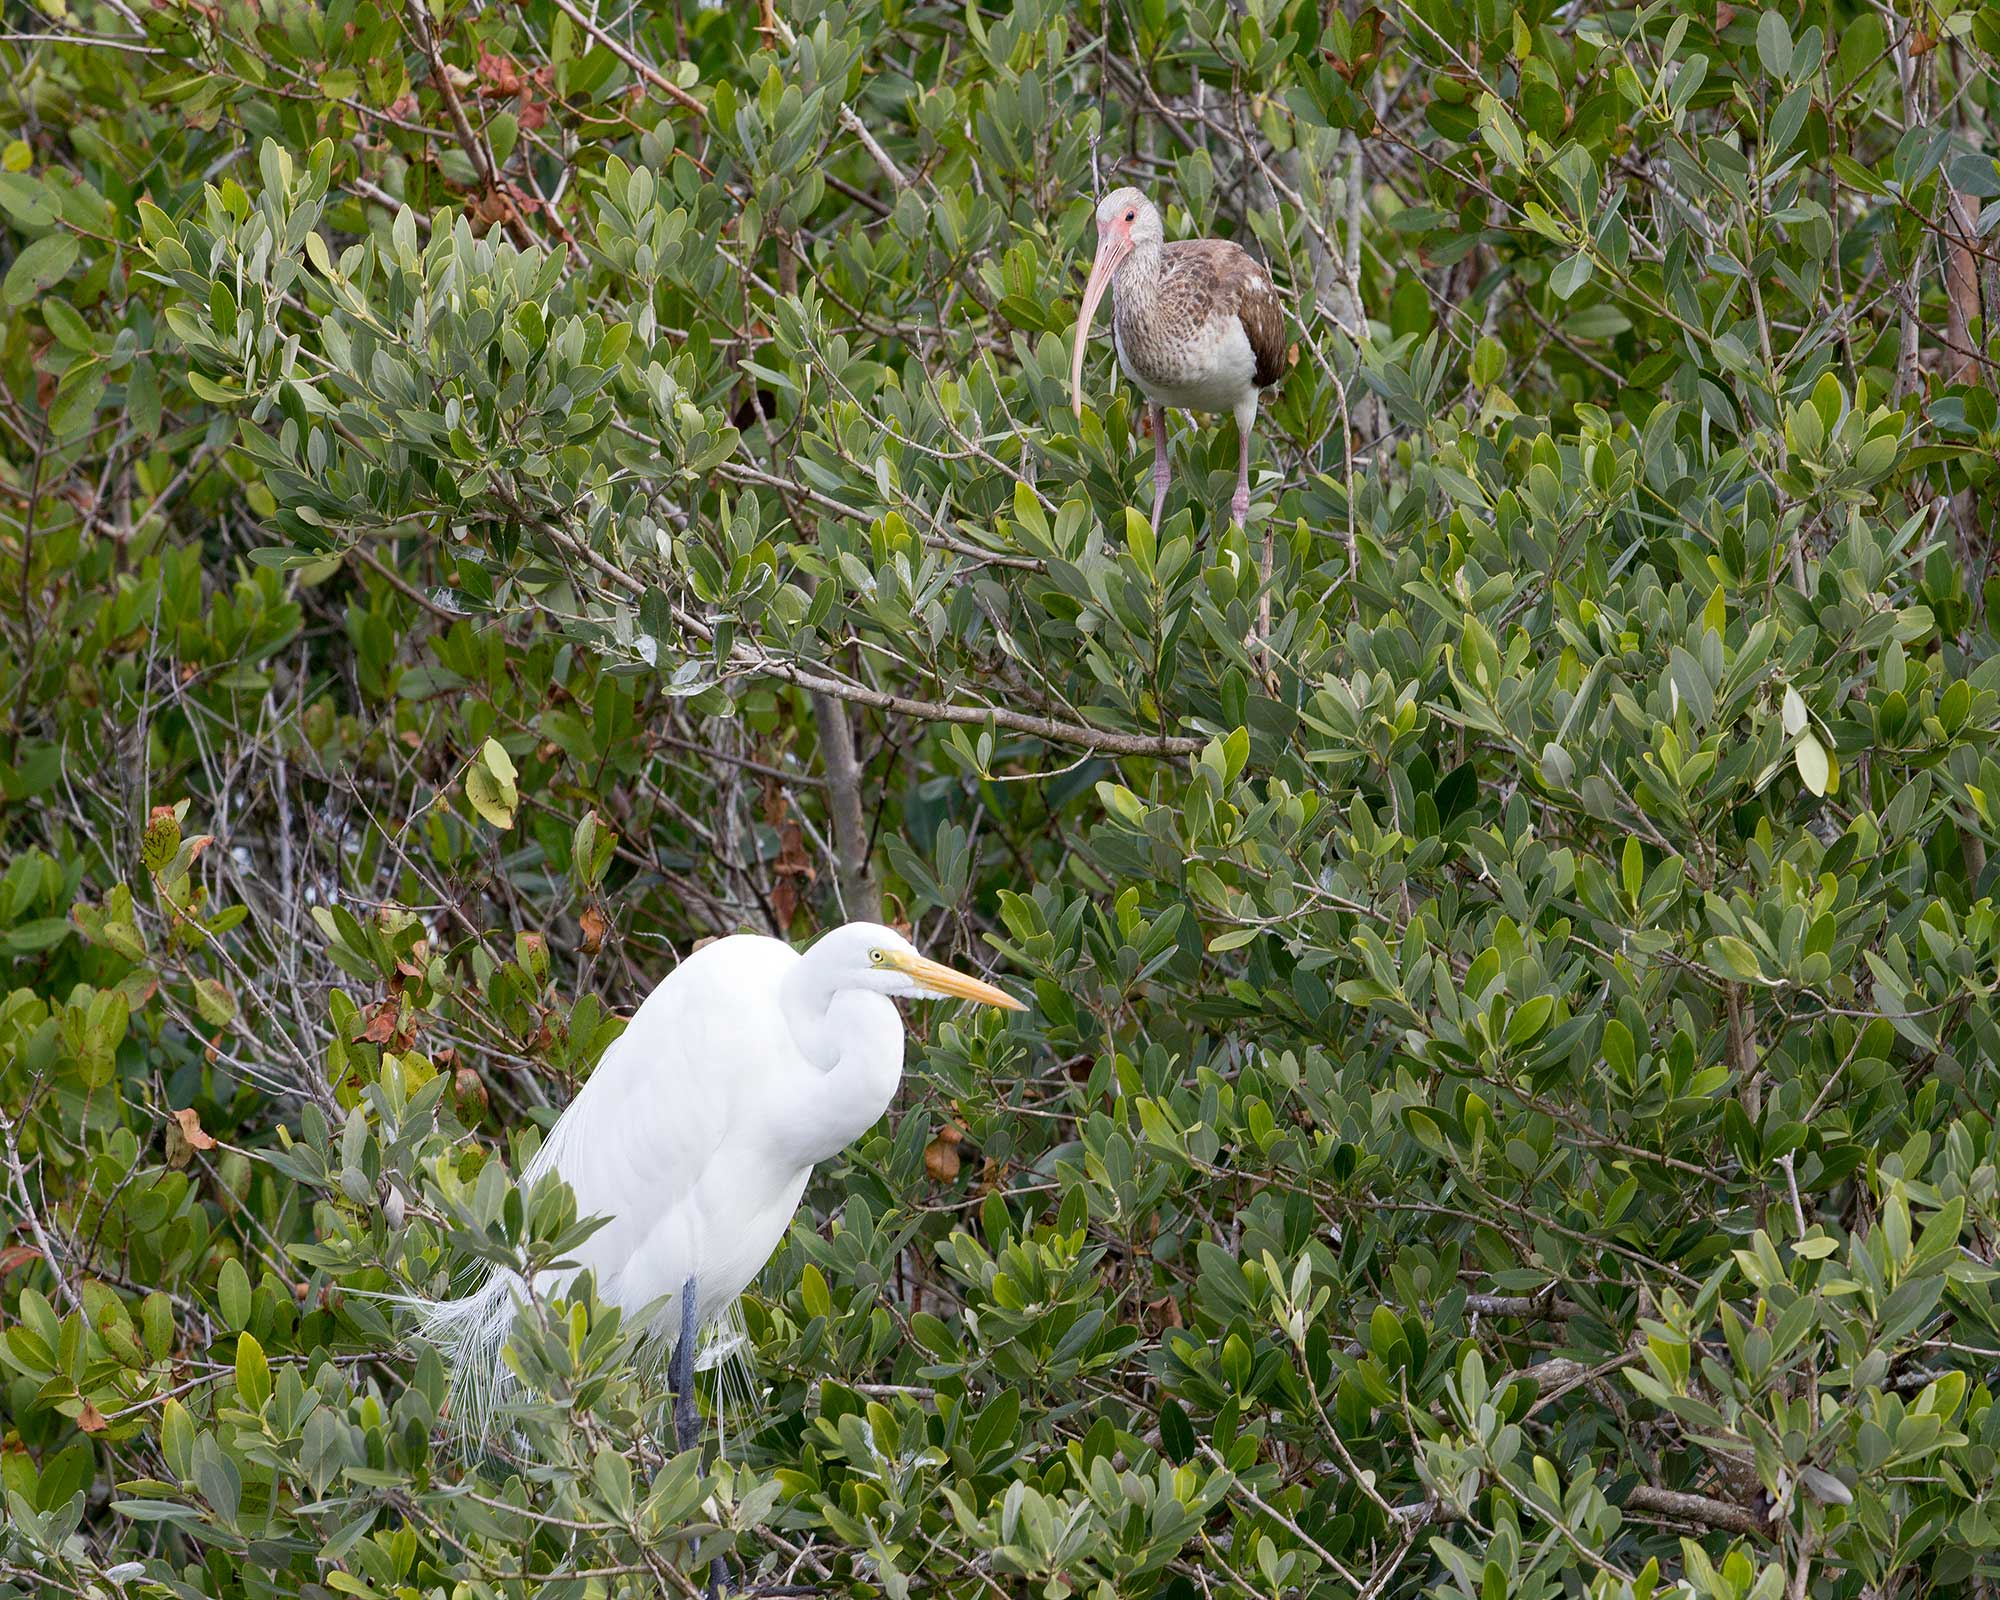 White Ibis and Egret